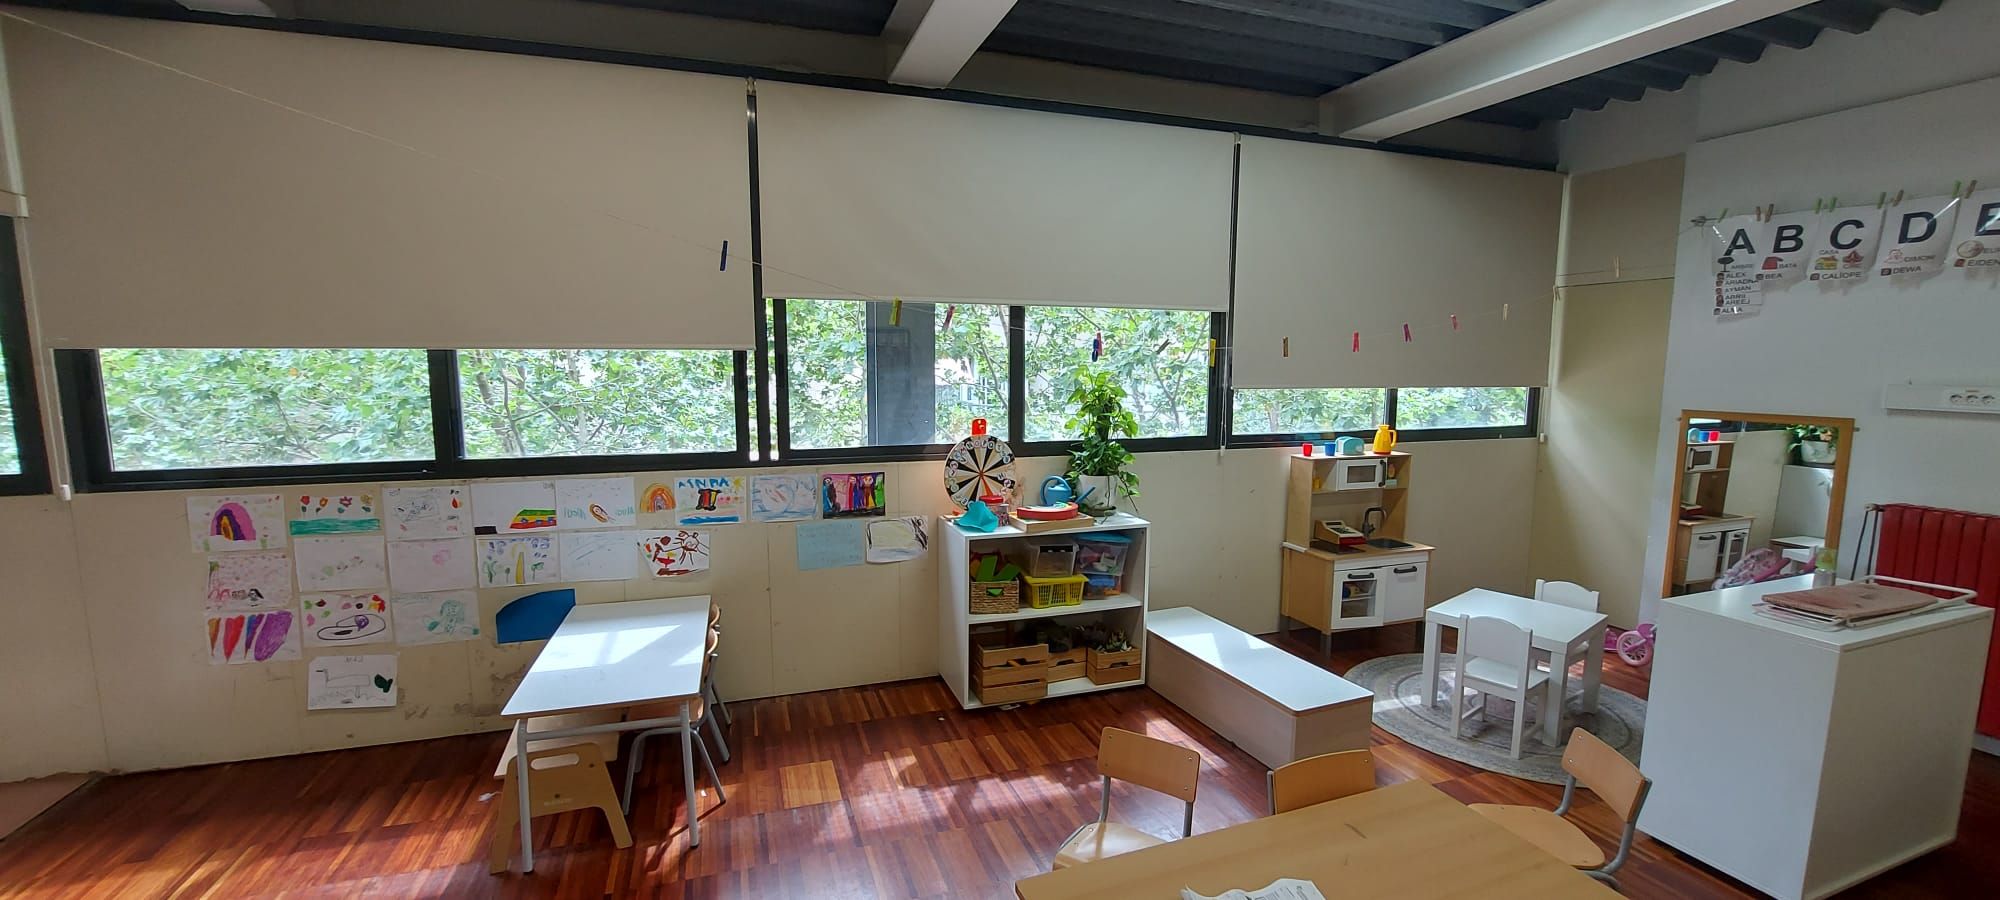 Instalación de cortinas enrollables con tejido opaco, referencia OPAC400 color 08008BEIGE, en colegio de Barcelona